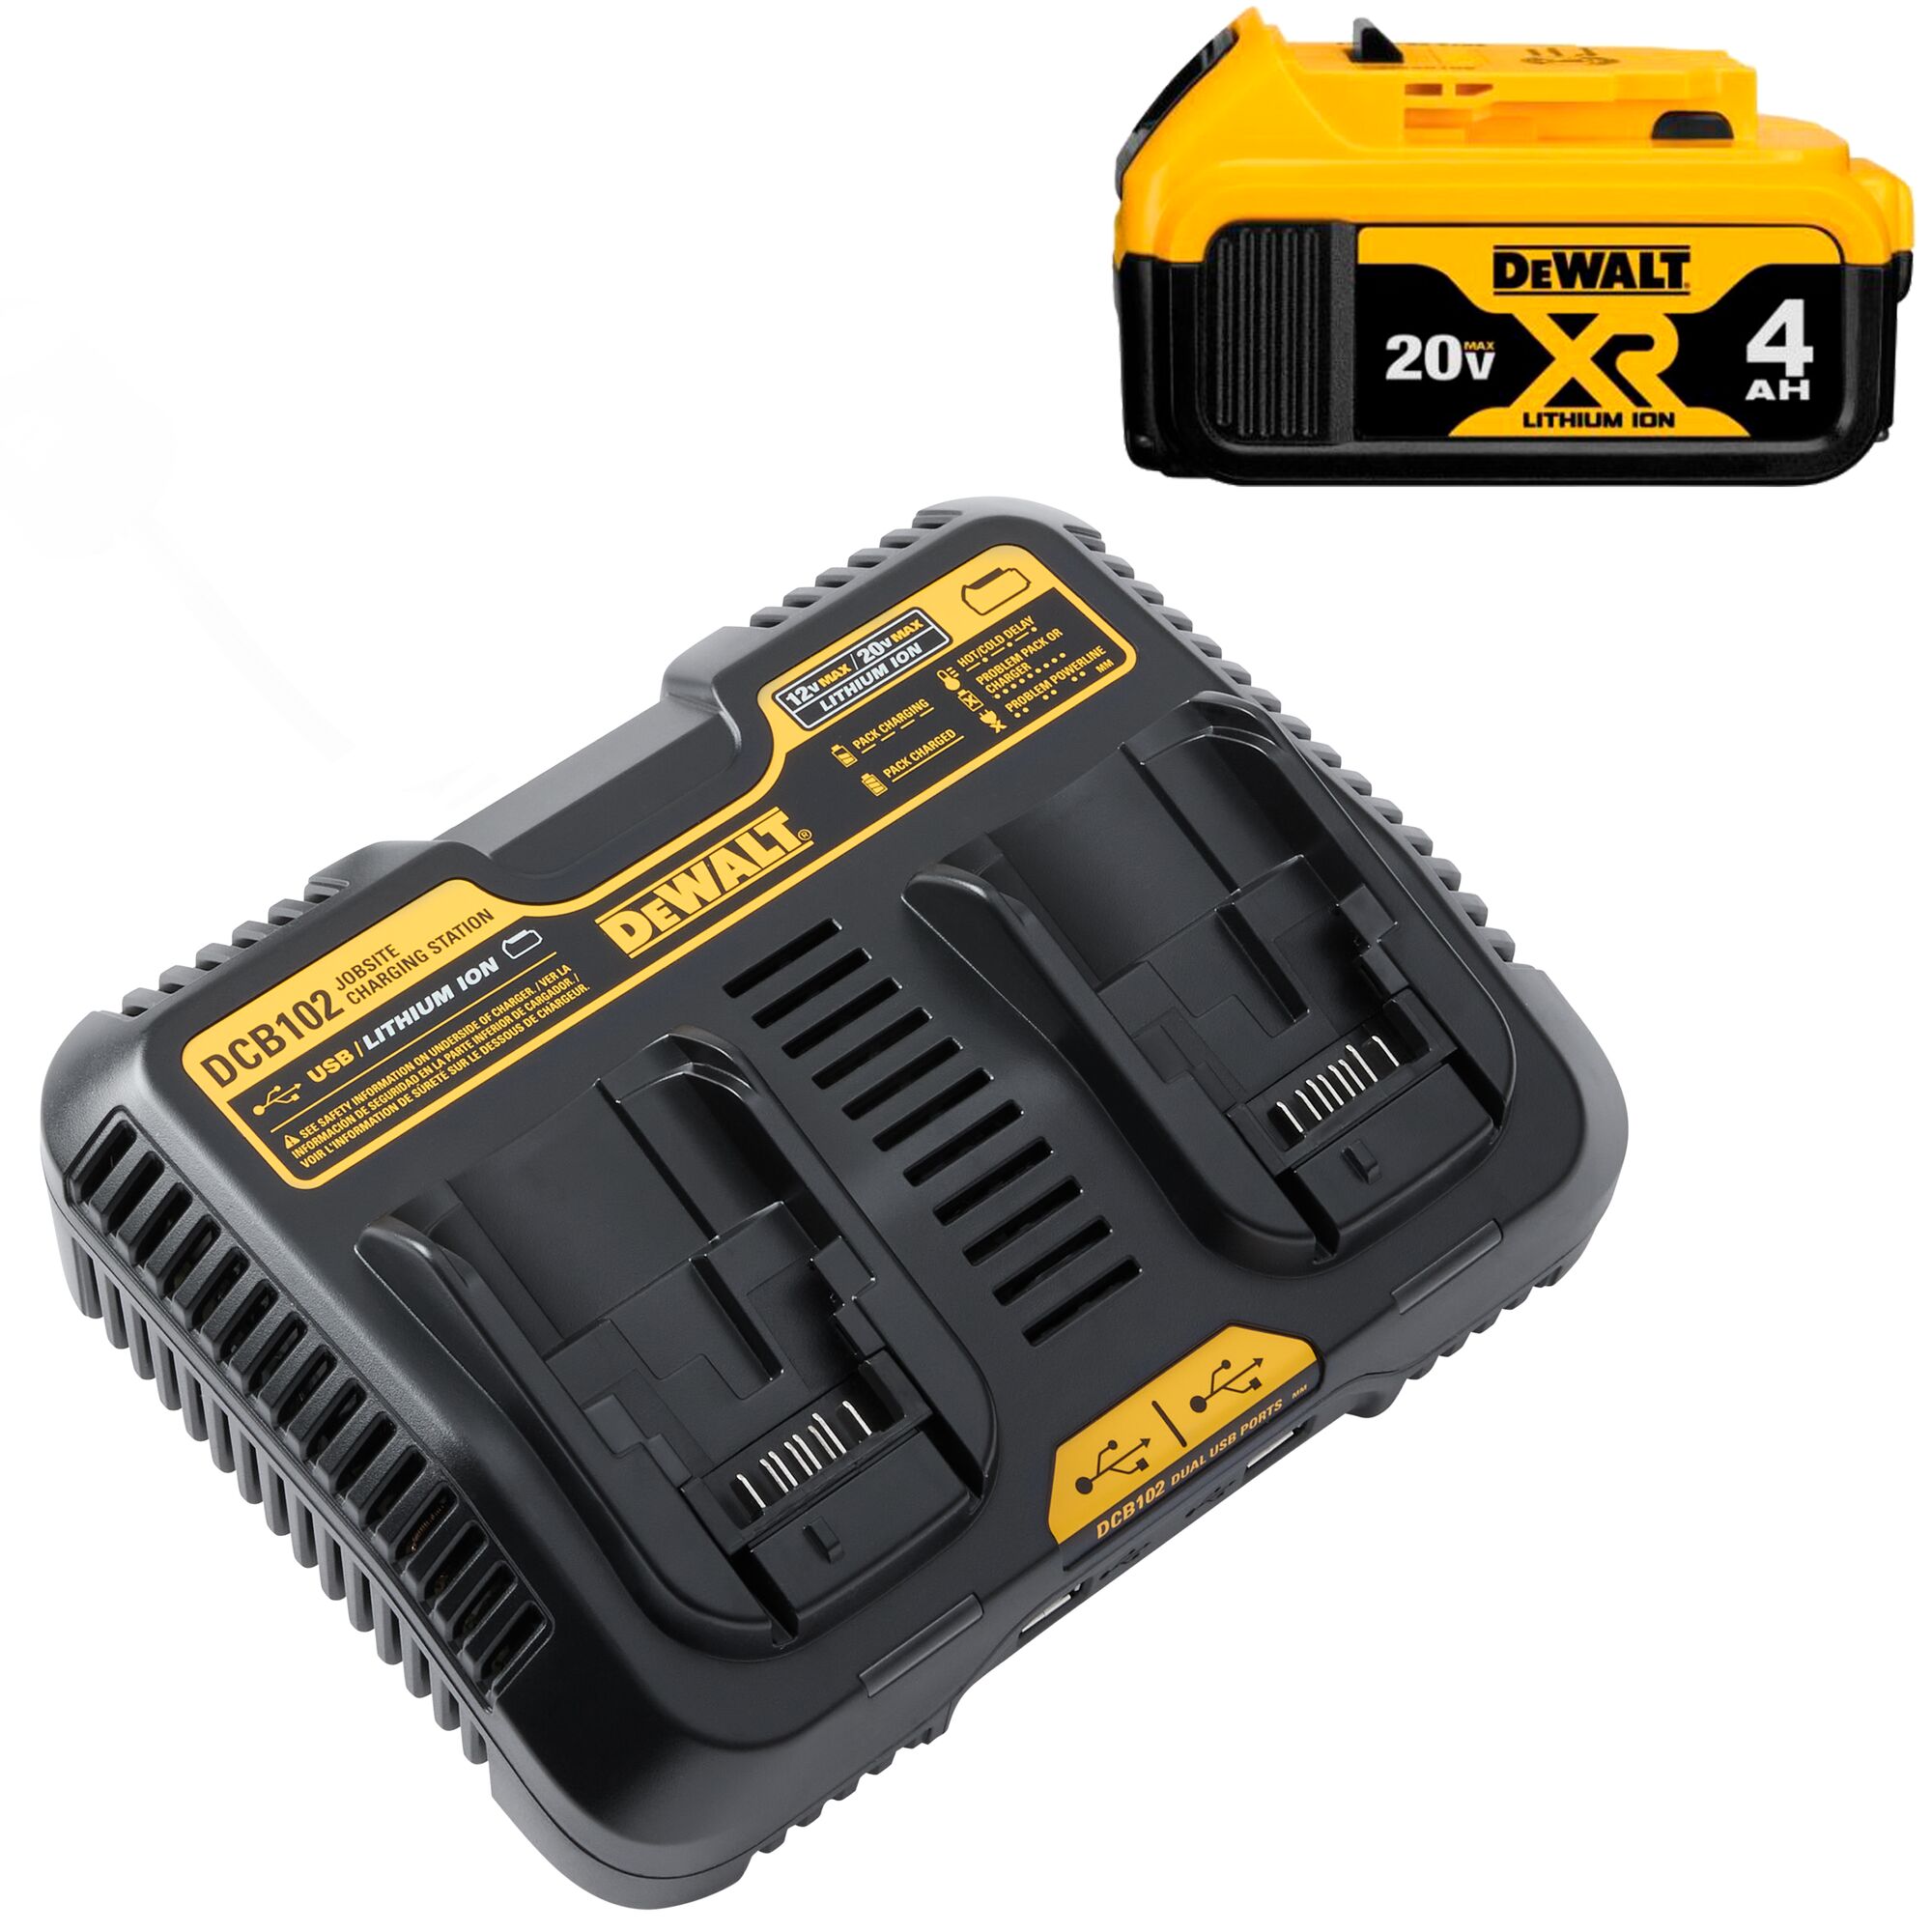 DeWalt 20 volt battery charger - tools - by owner - sale - craigslist